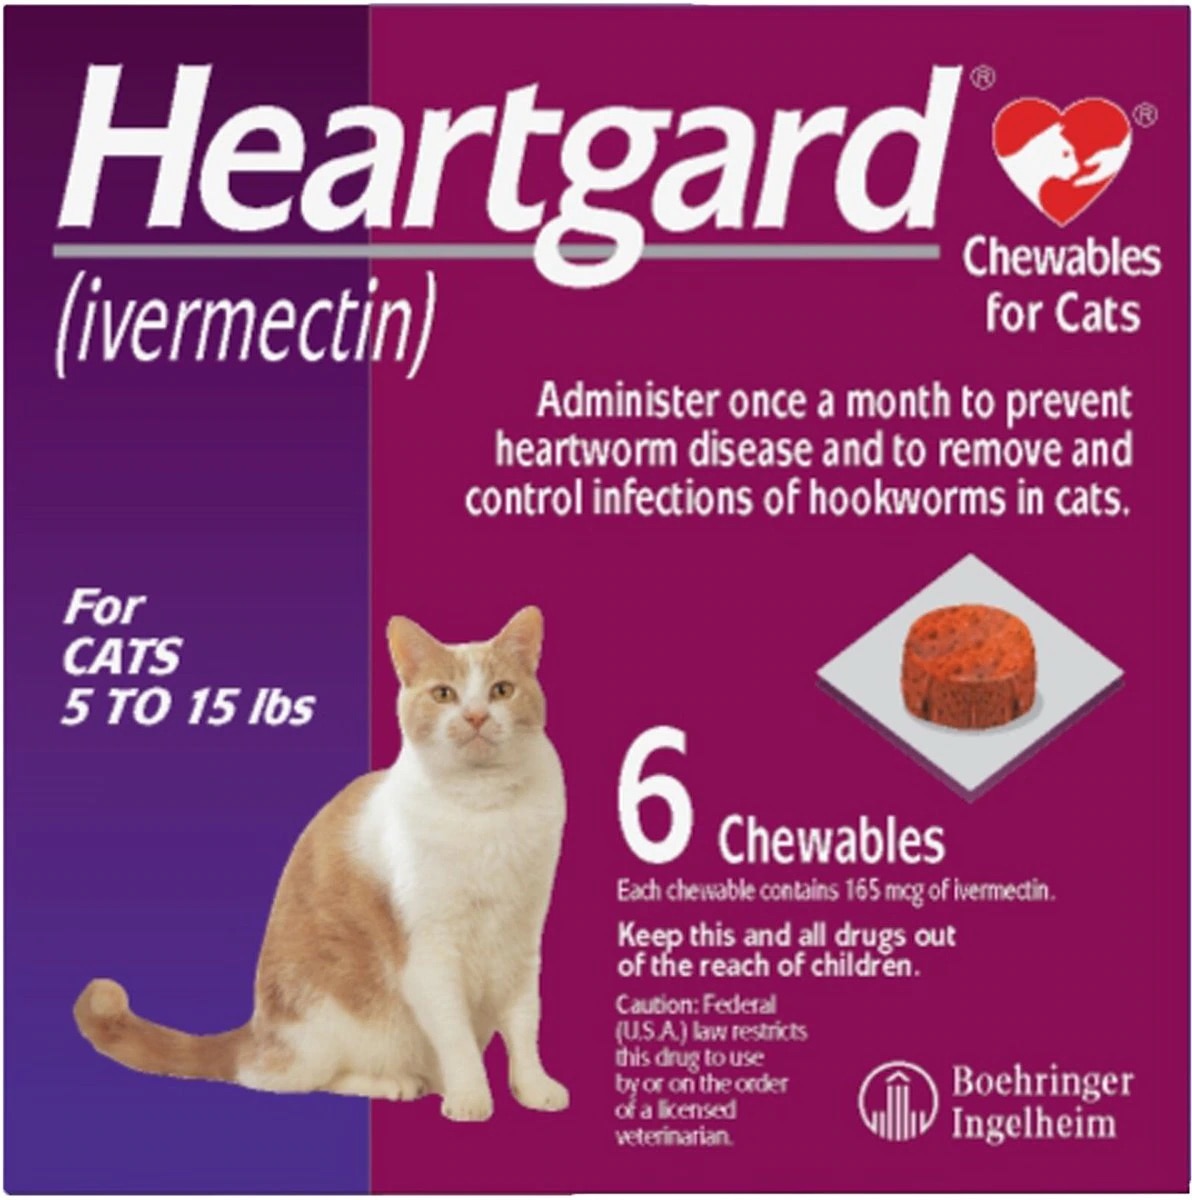 heartgard for cats